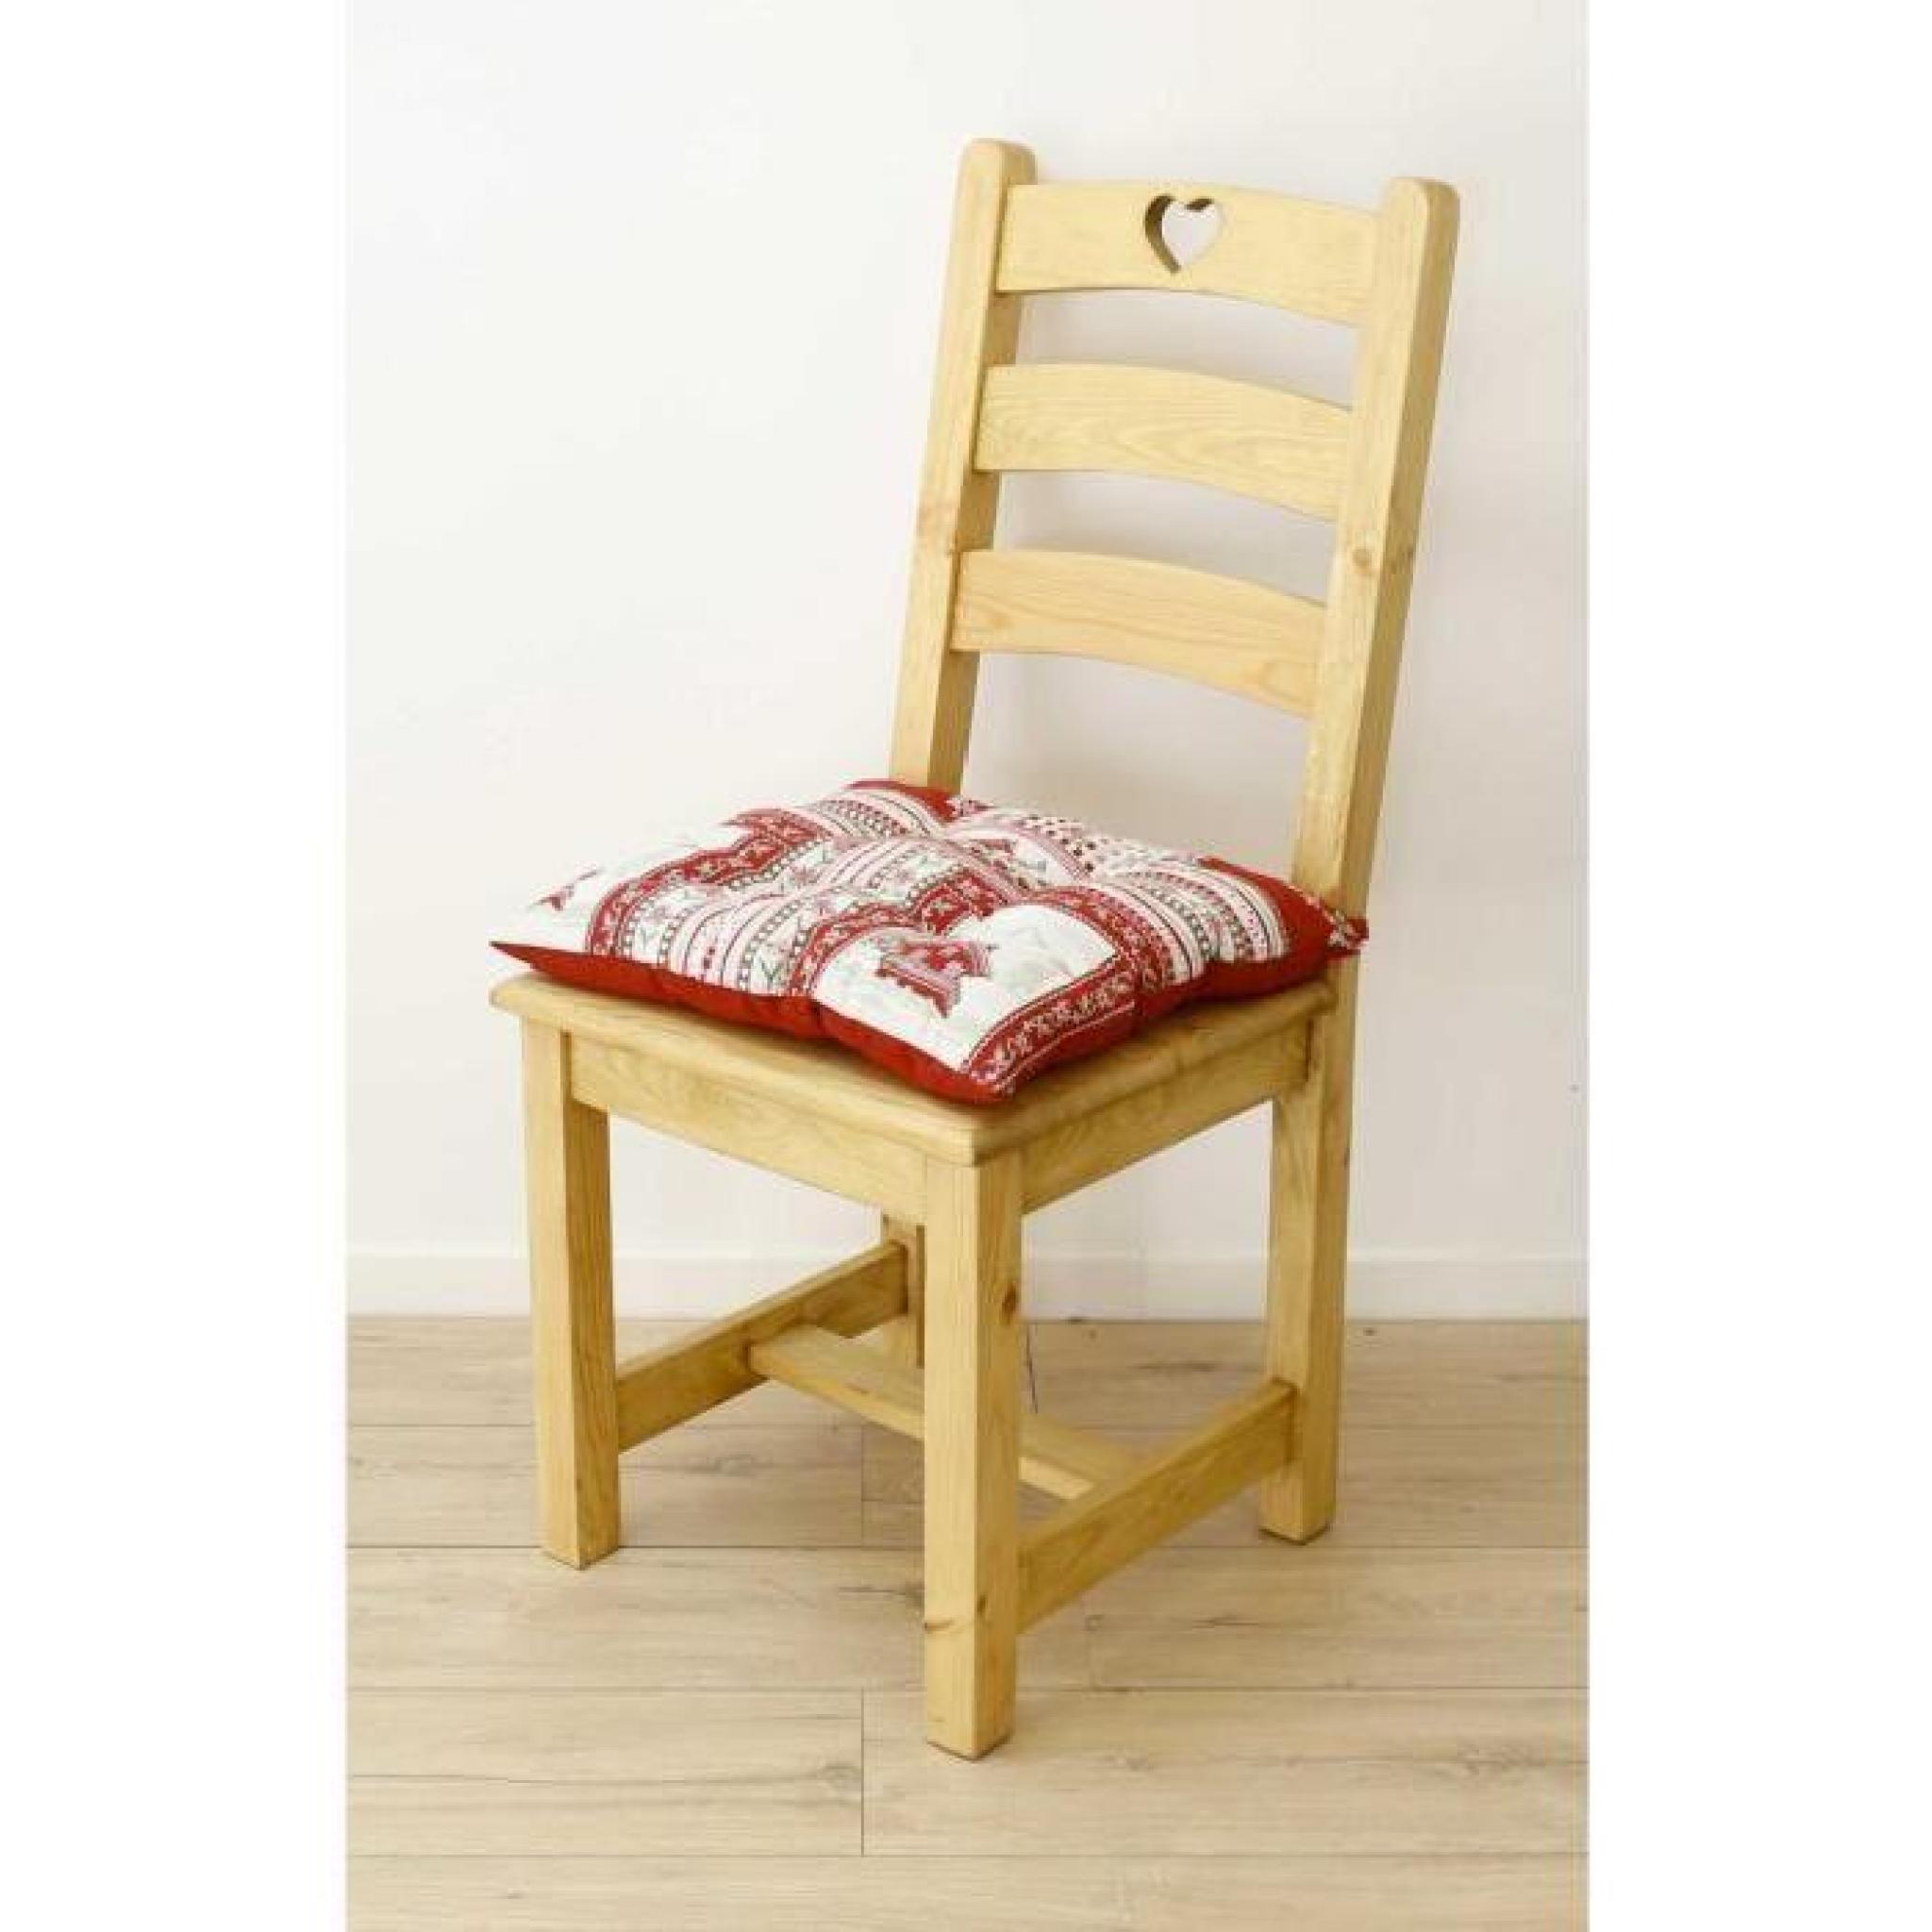 Galette de chaise style montagne Vanoise blanc rouge Aspin pas cher